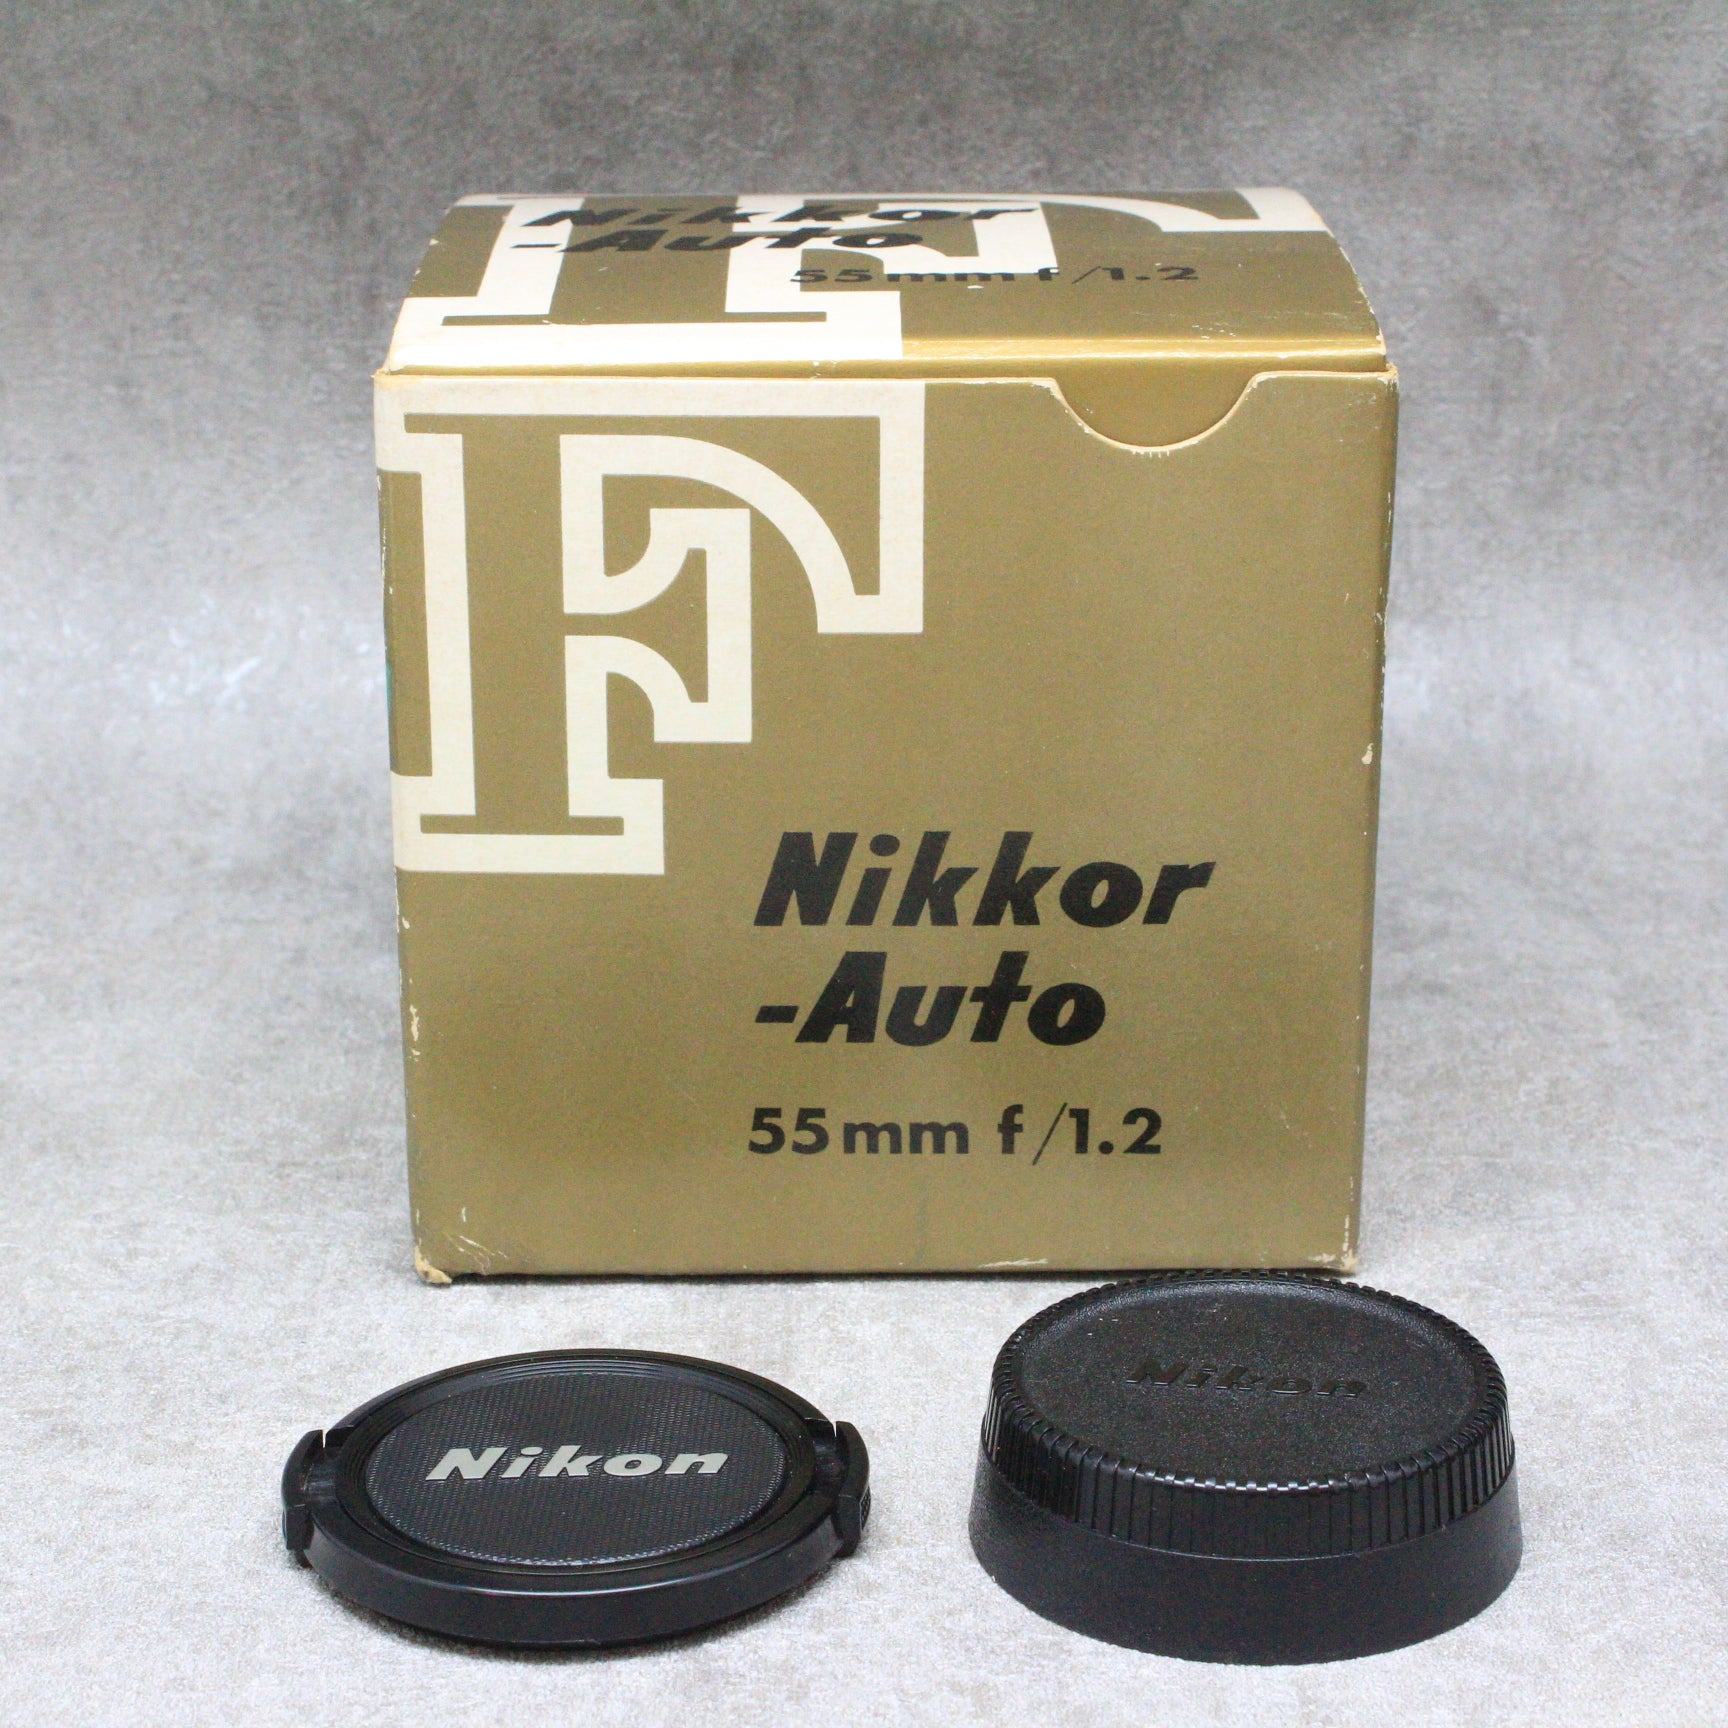 中古品 Nikon Auto NIKKOR-S 55mm F1.2 非Ai